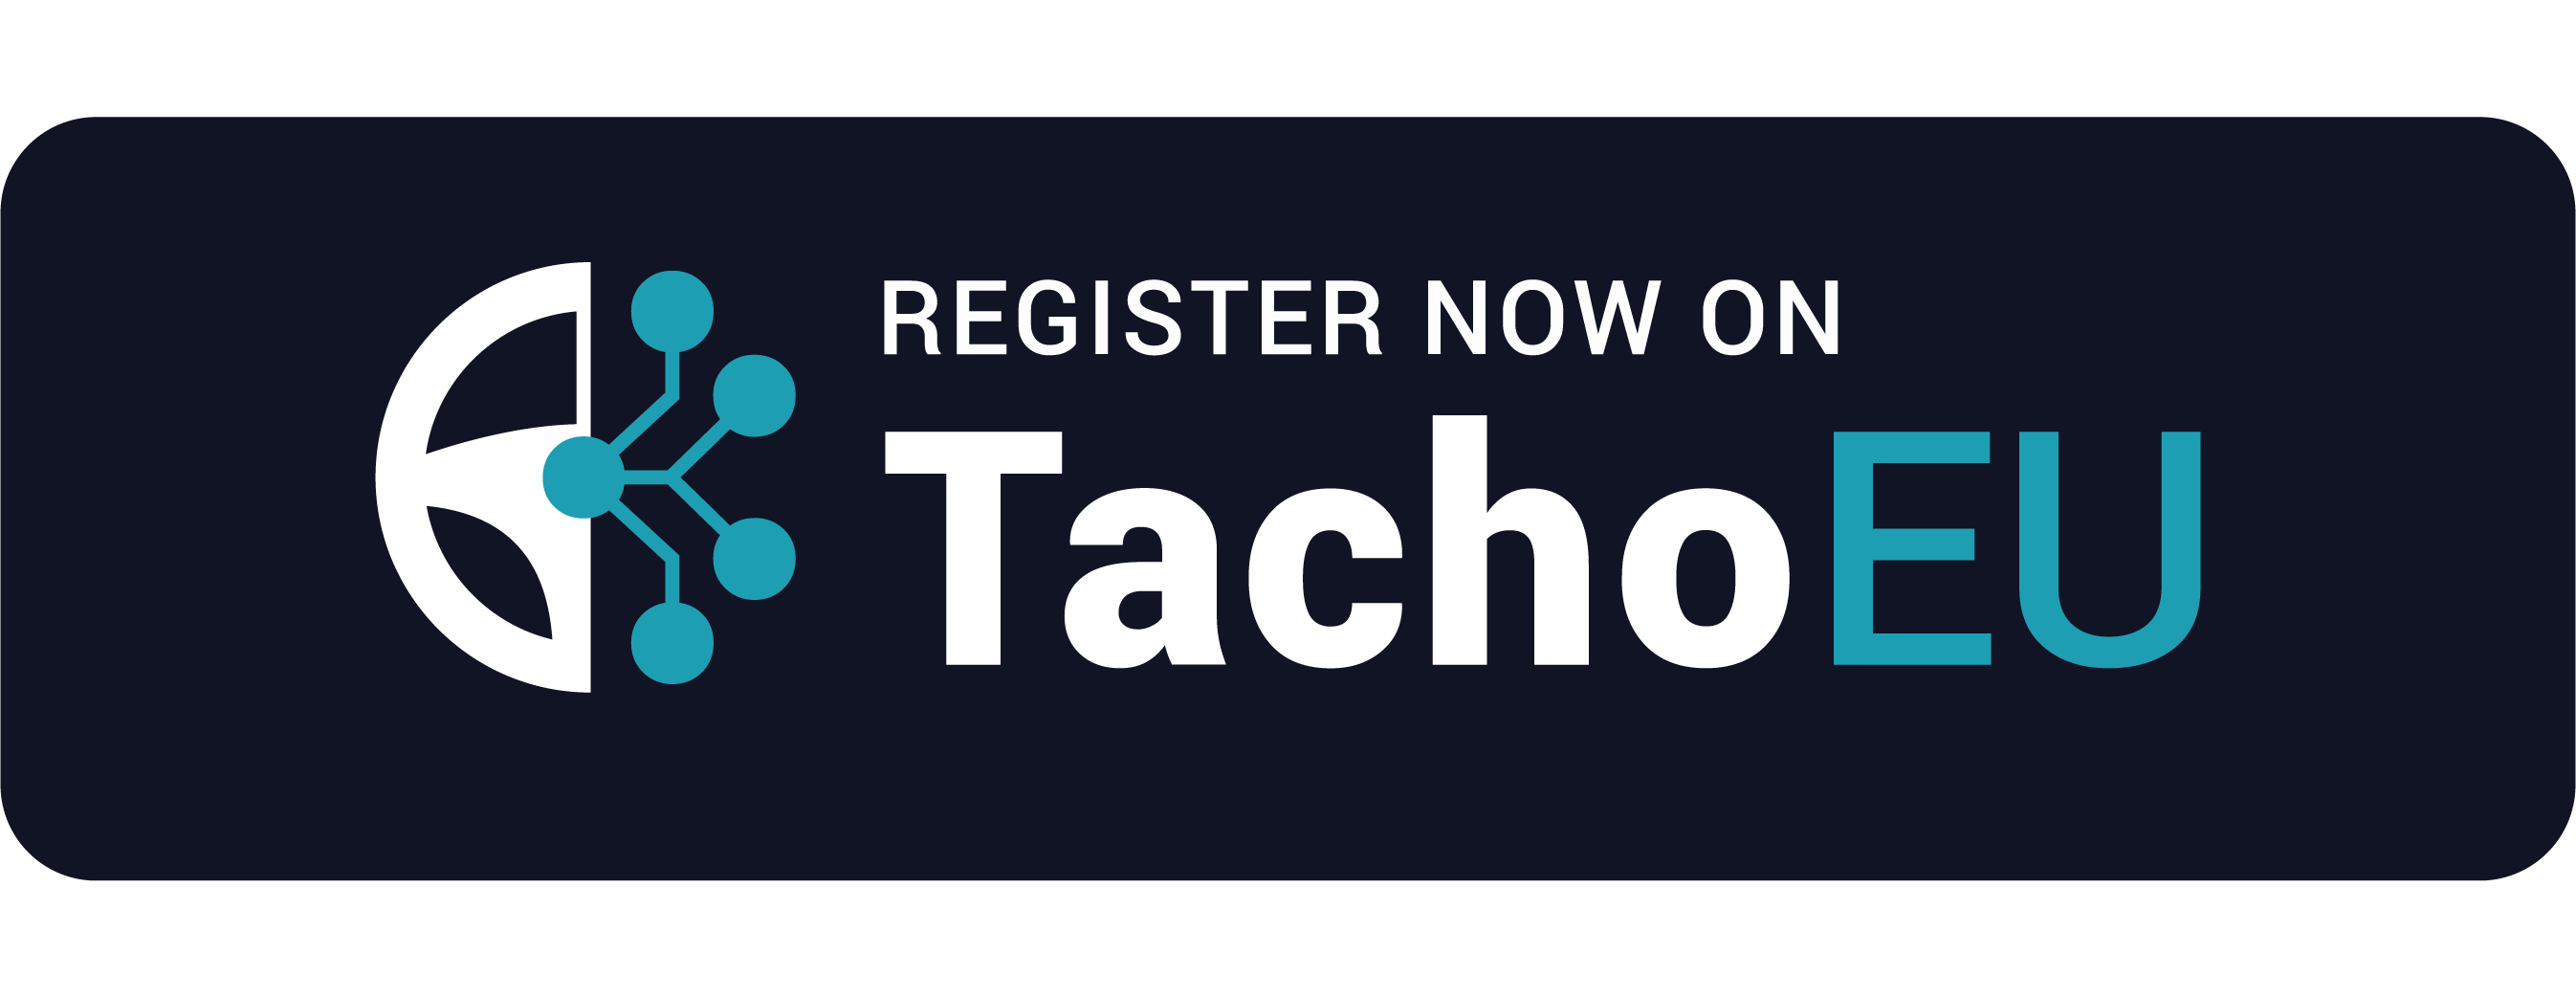 TachoEU Portal